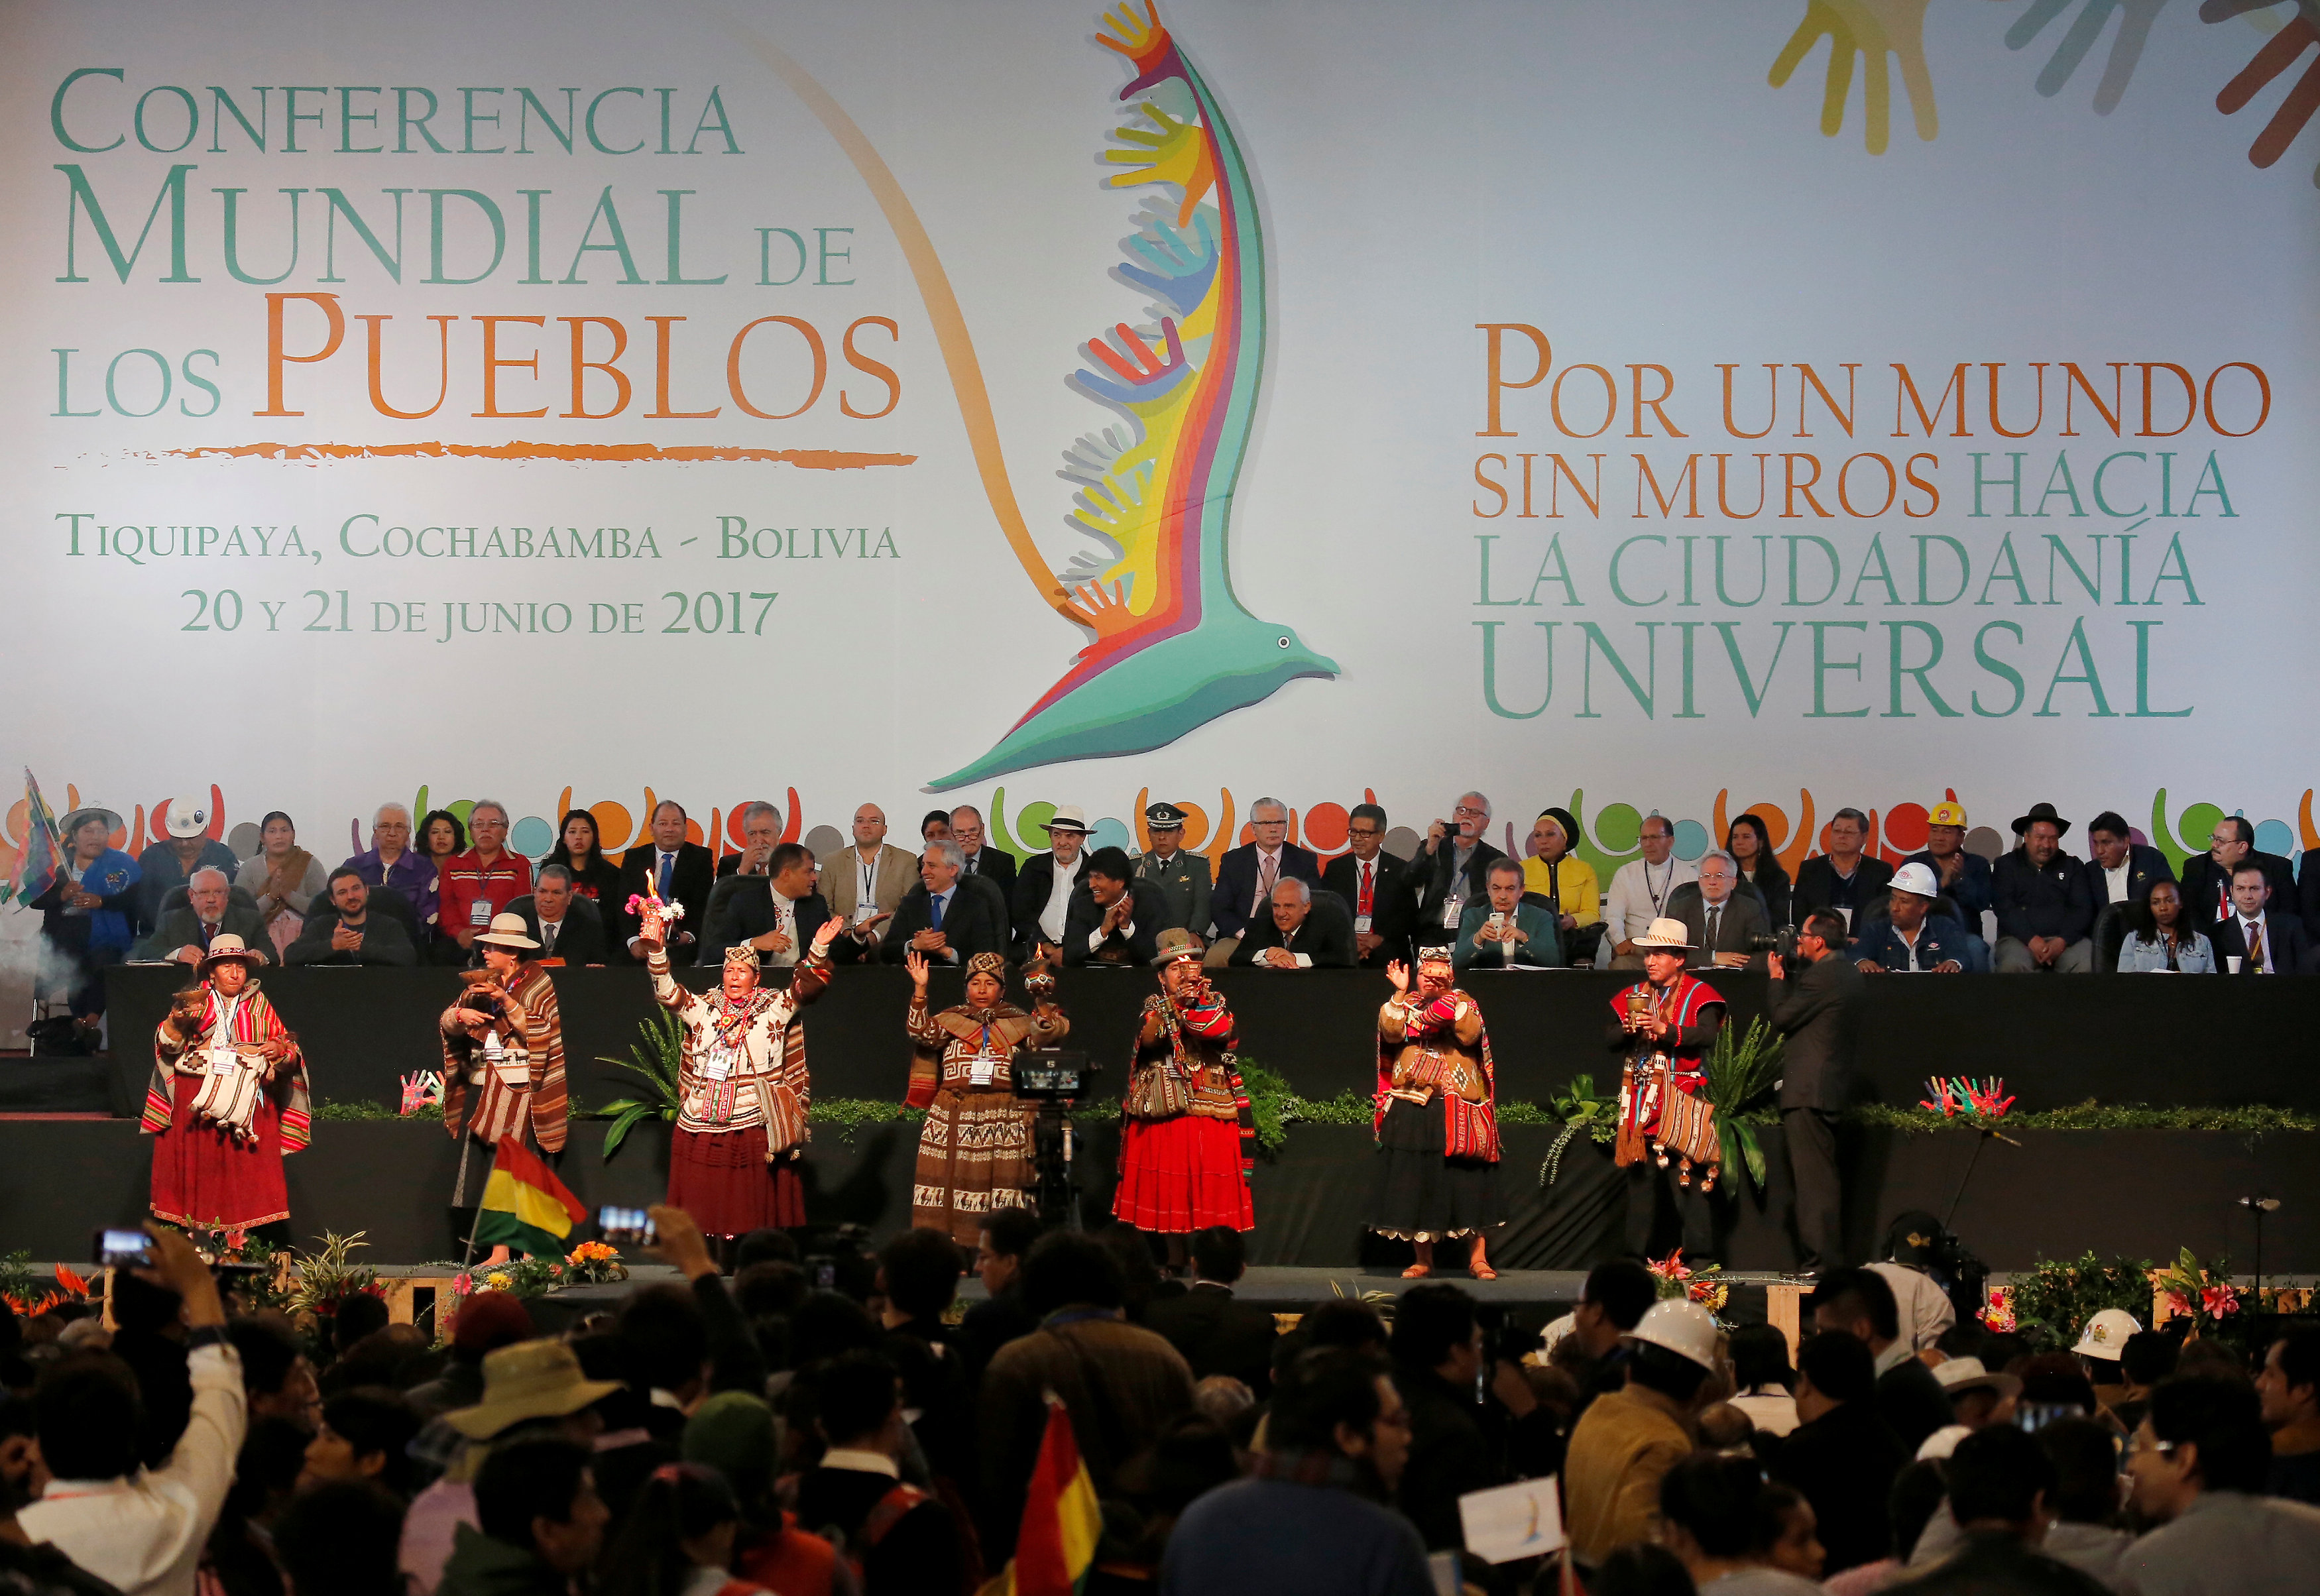 El mandatario boliviano asistió a la Conferencia de los Pueblos, donde la izquierda latinoamericana y mundial debatirá sobre el racismo y la xenofobia en el mundo.